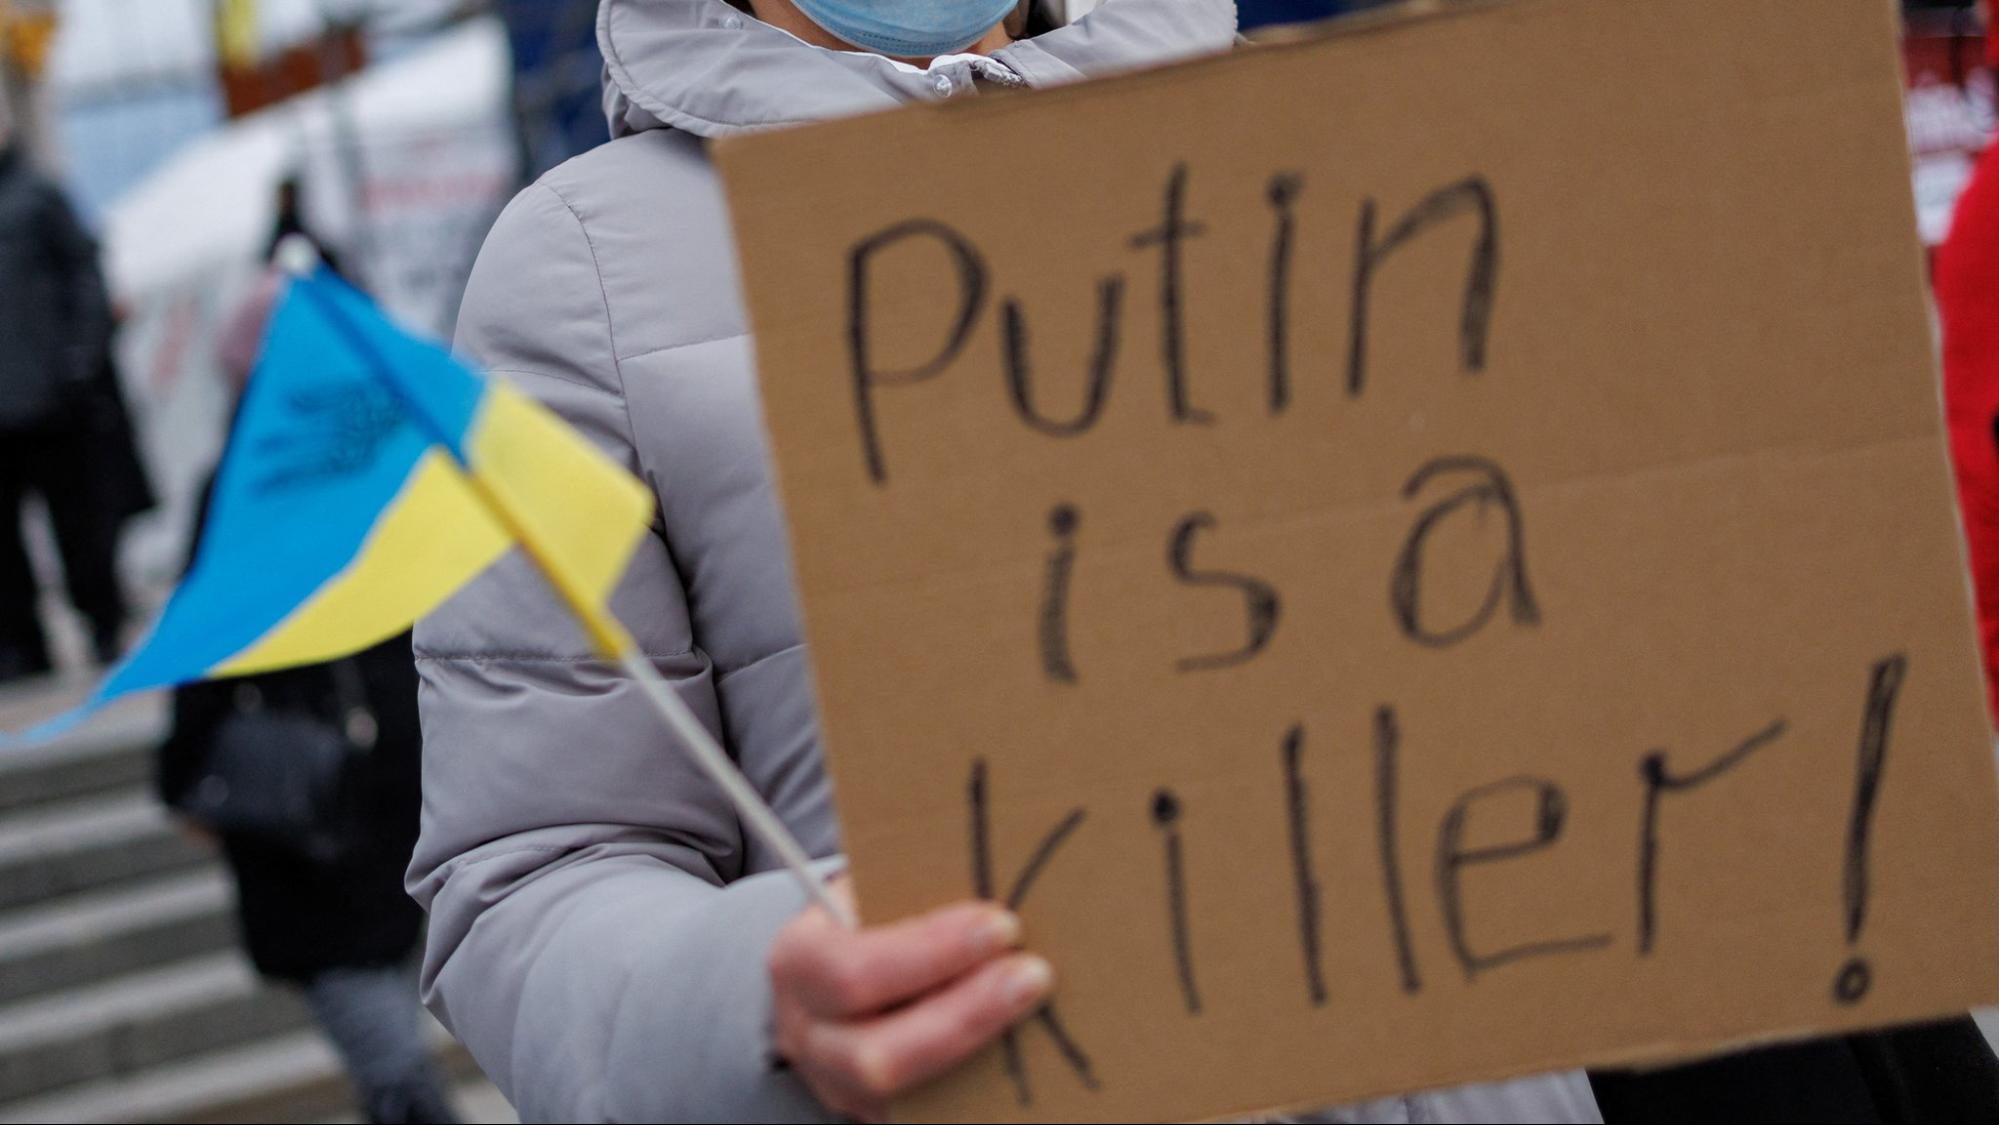 Хроніка подій: 82 день оборони України від російської агресії